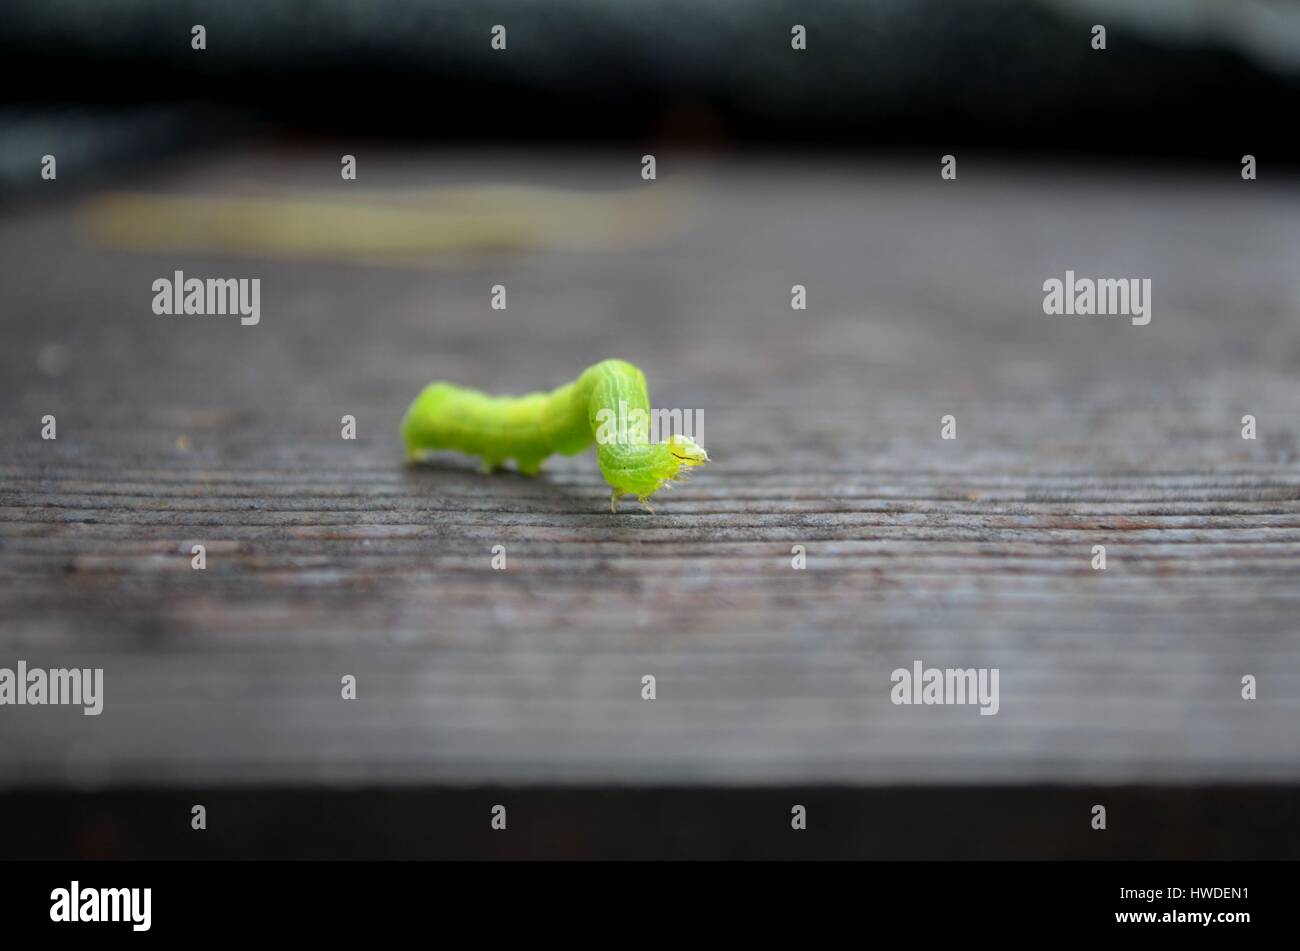 Cavolo bianco caterpillar in stretta dettaglio Foto Stock